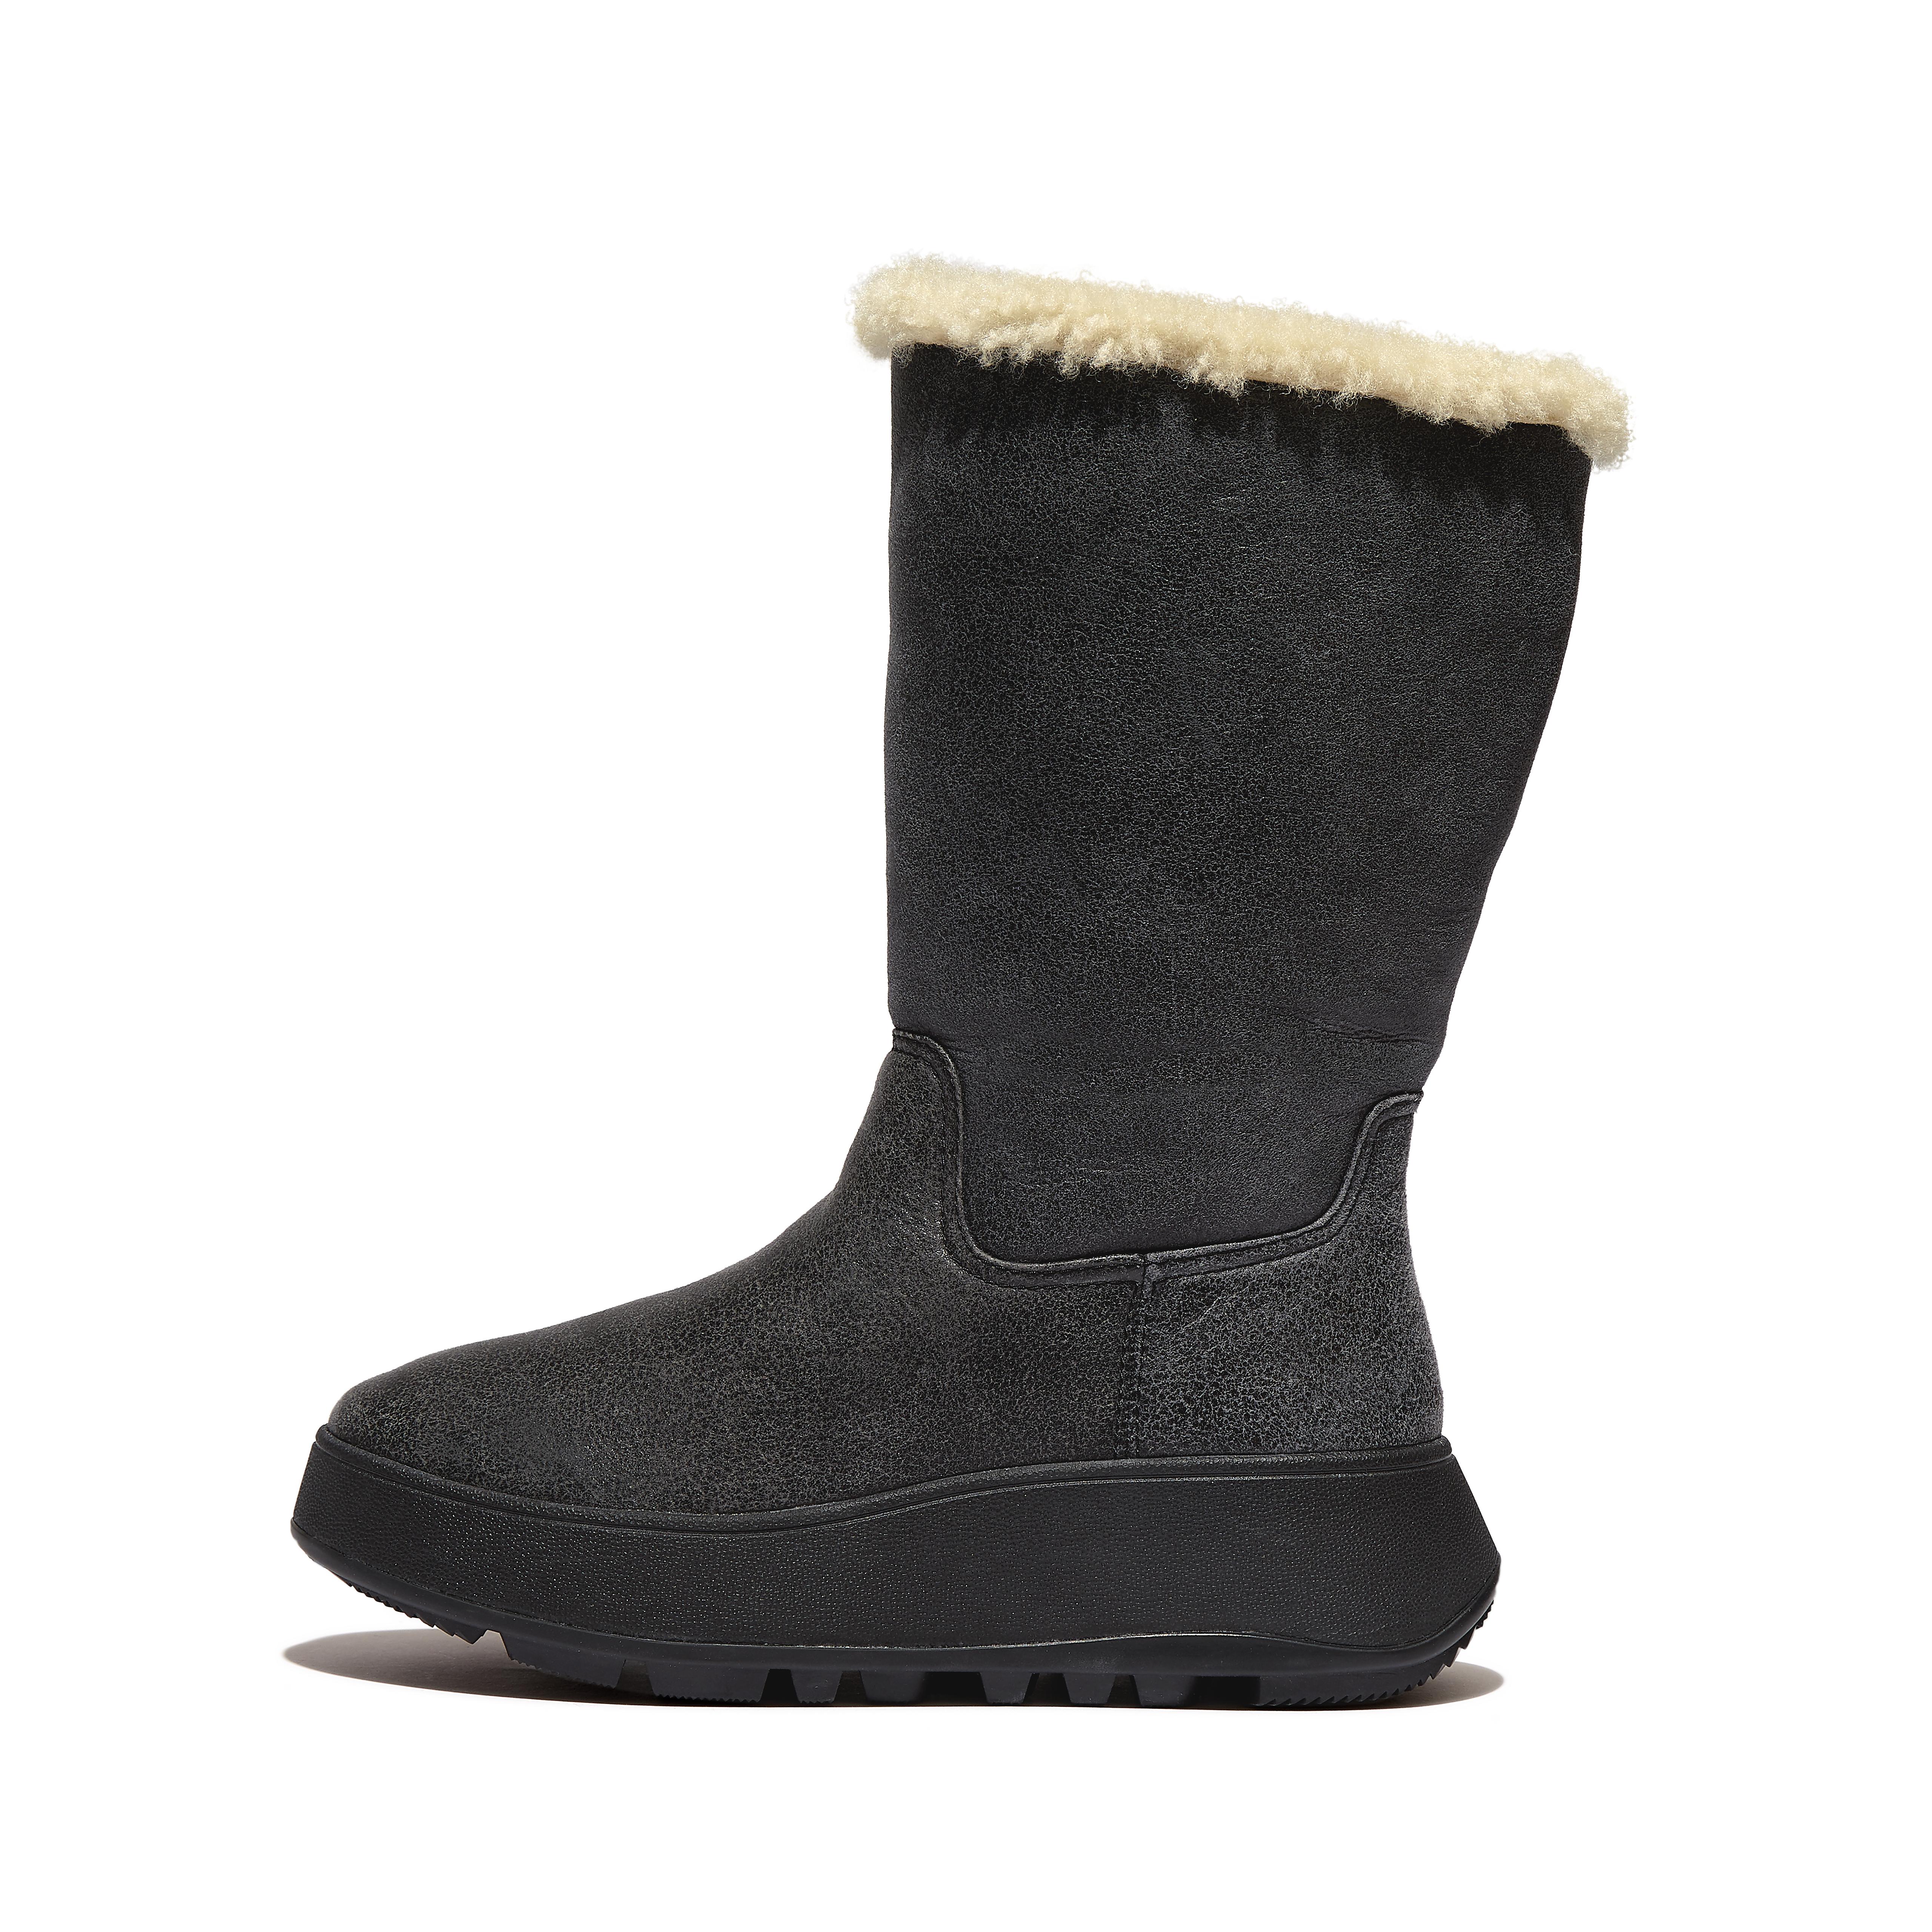 핏플랍 부츠 (털 안감) Fitflop Double-Faced Shearling Leather Flatform Calf Boots,Black